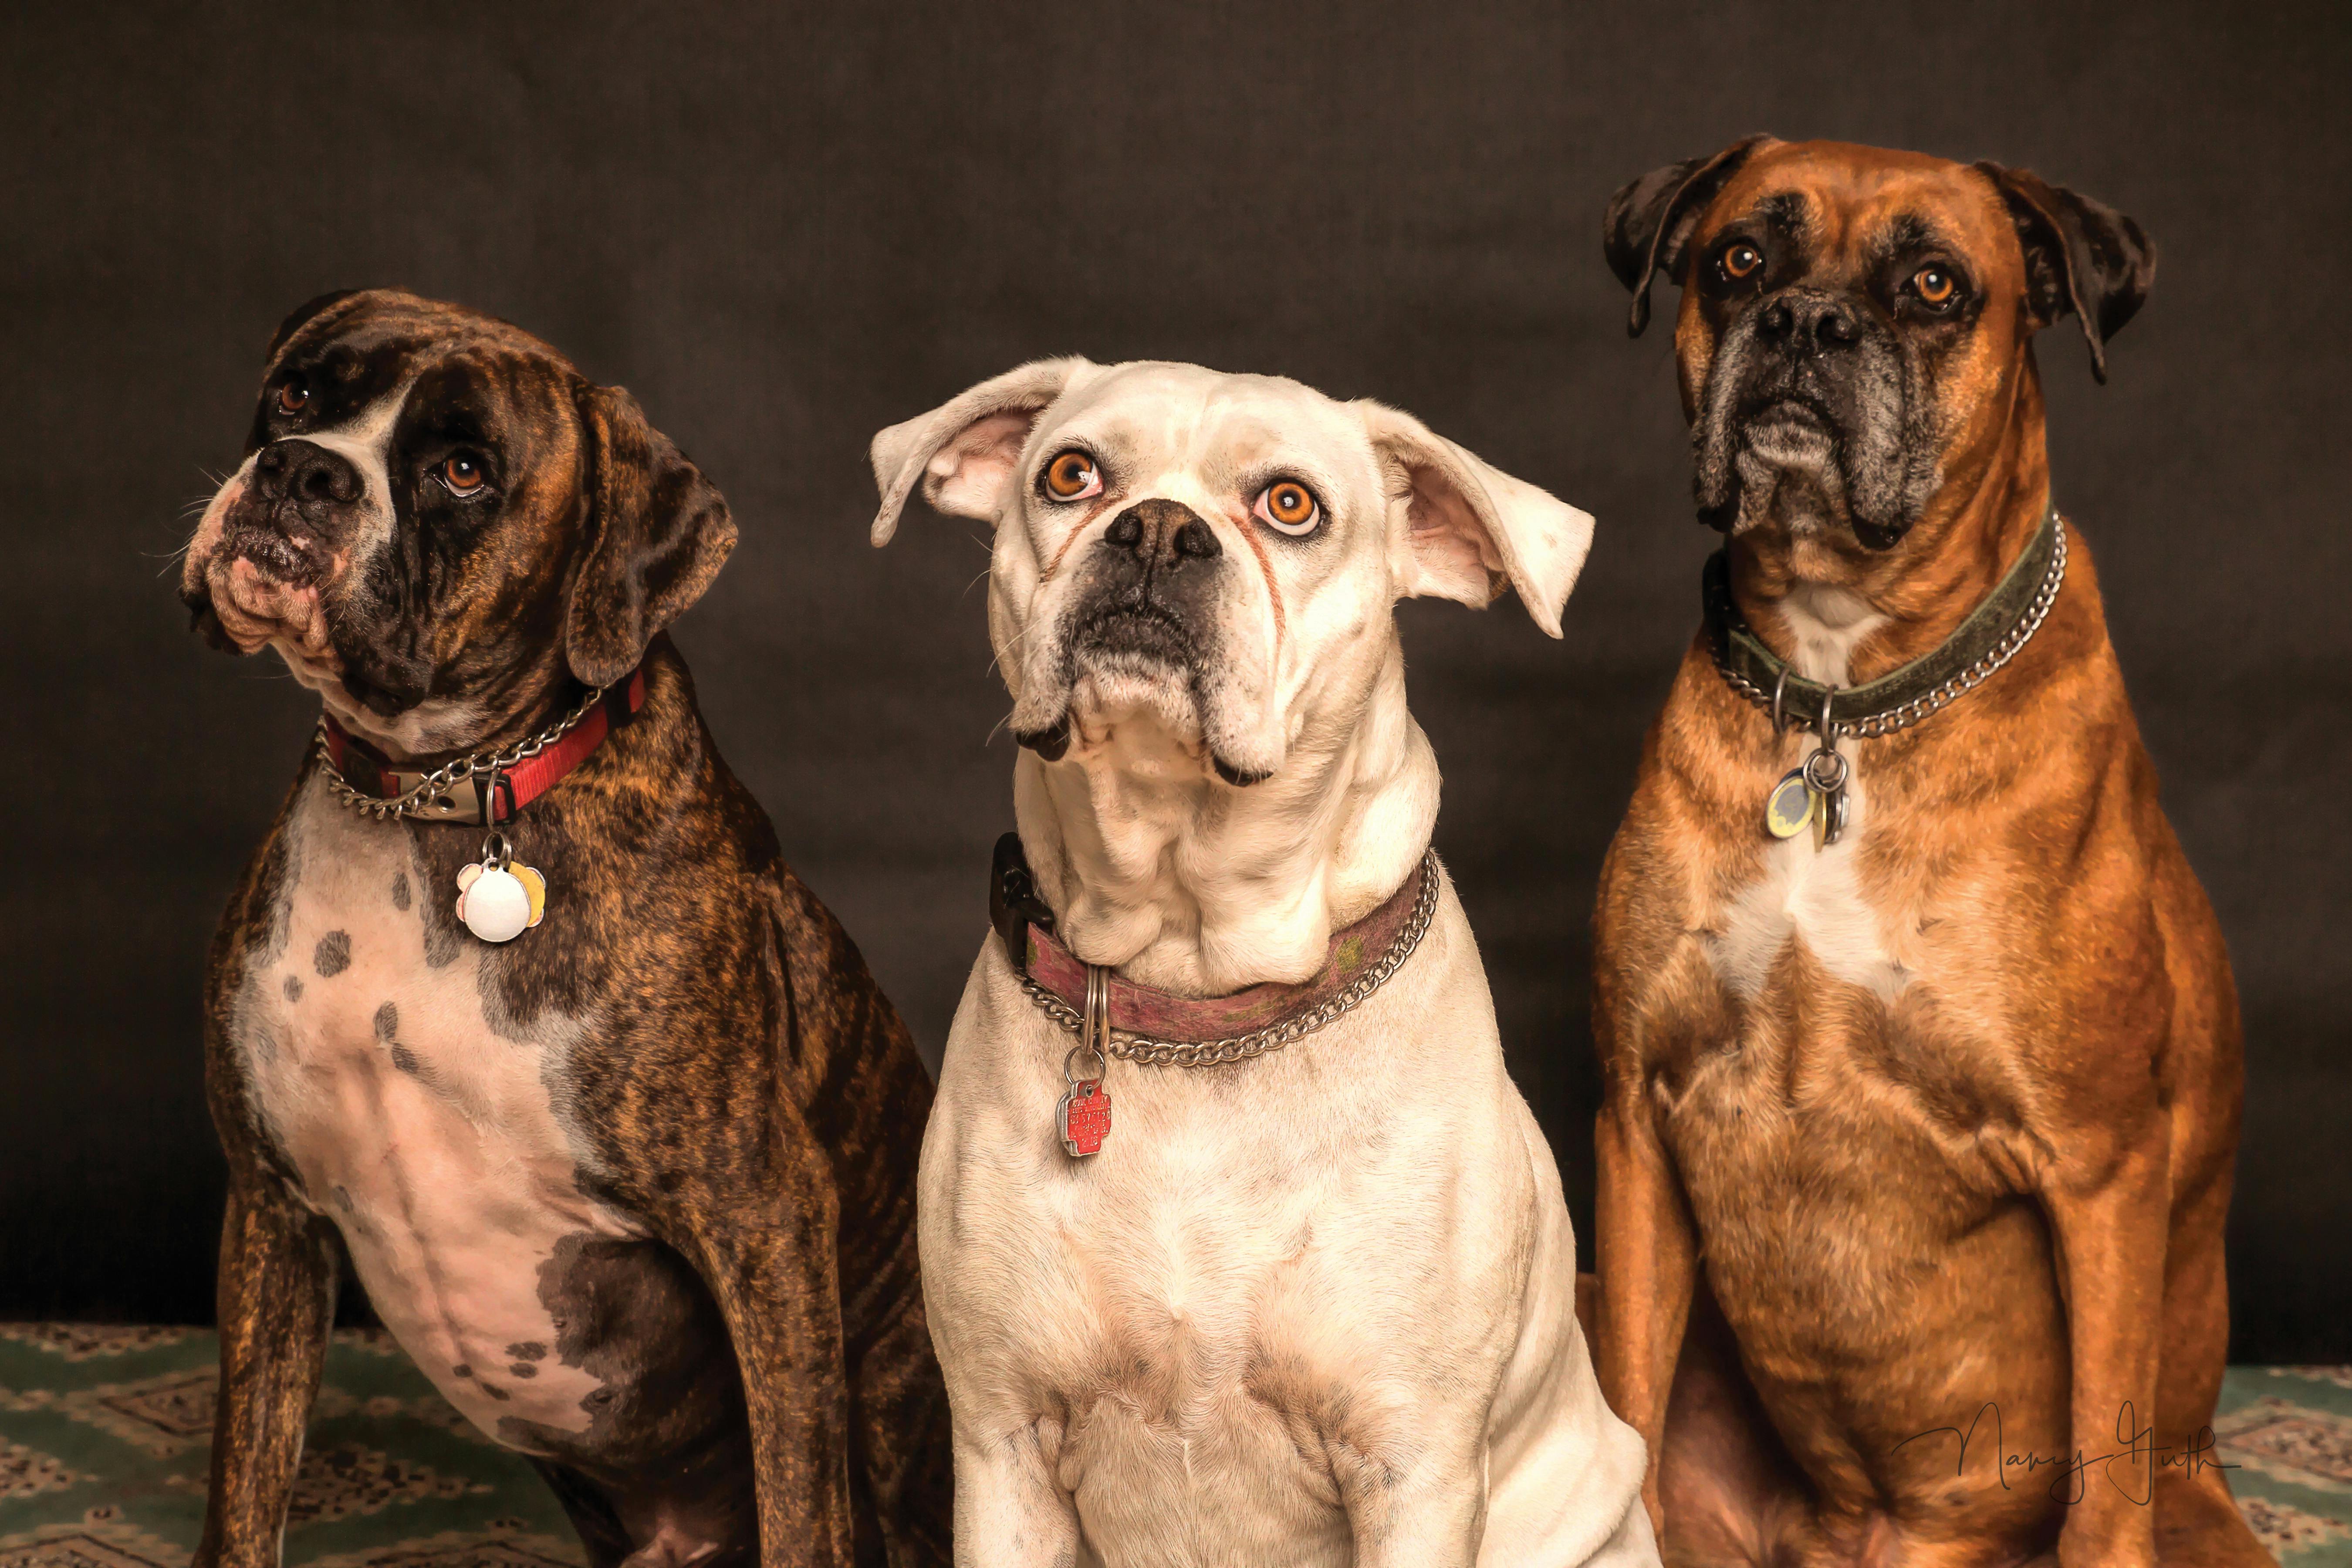 10.000+ Fotos de Perros · de Imágenes Gratis · Pexels